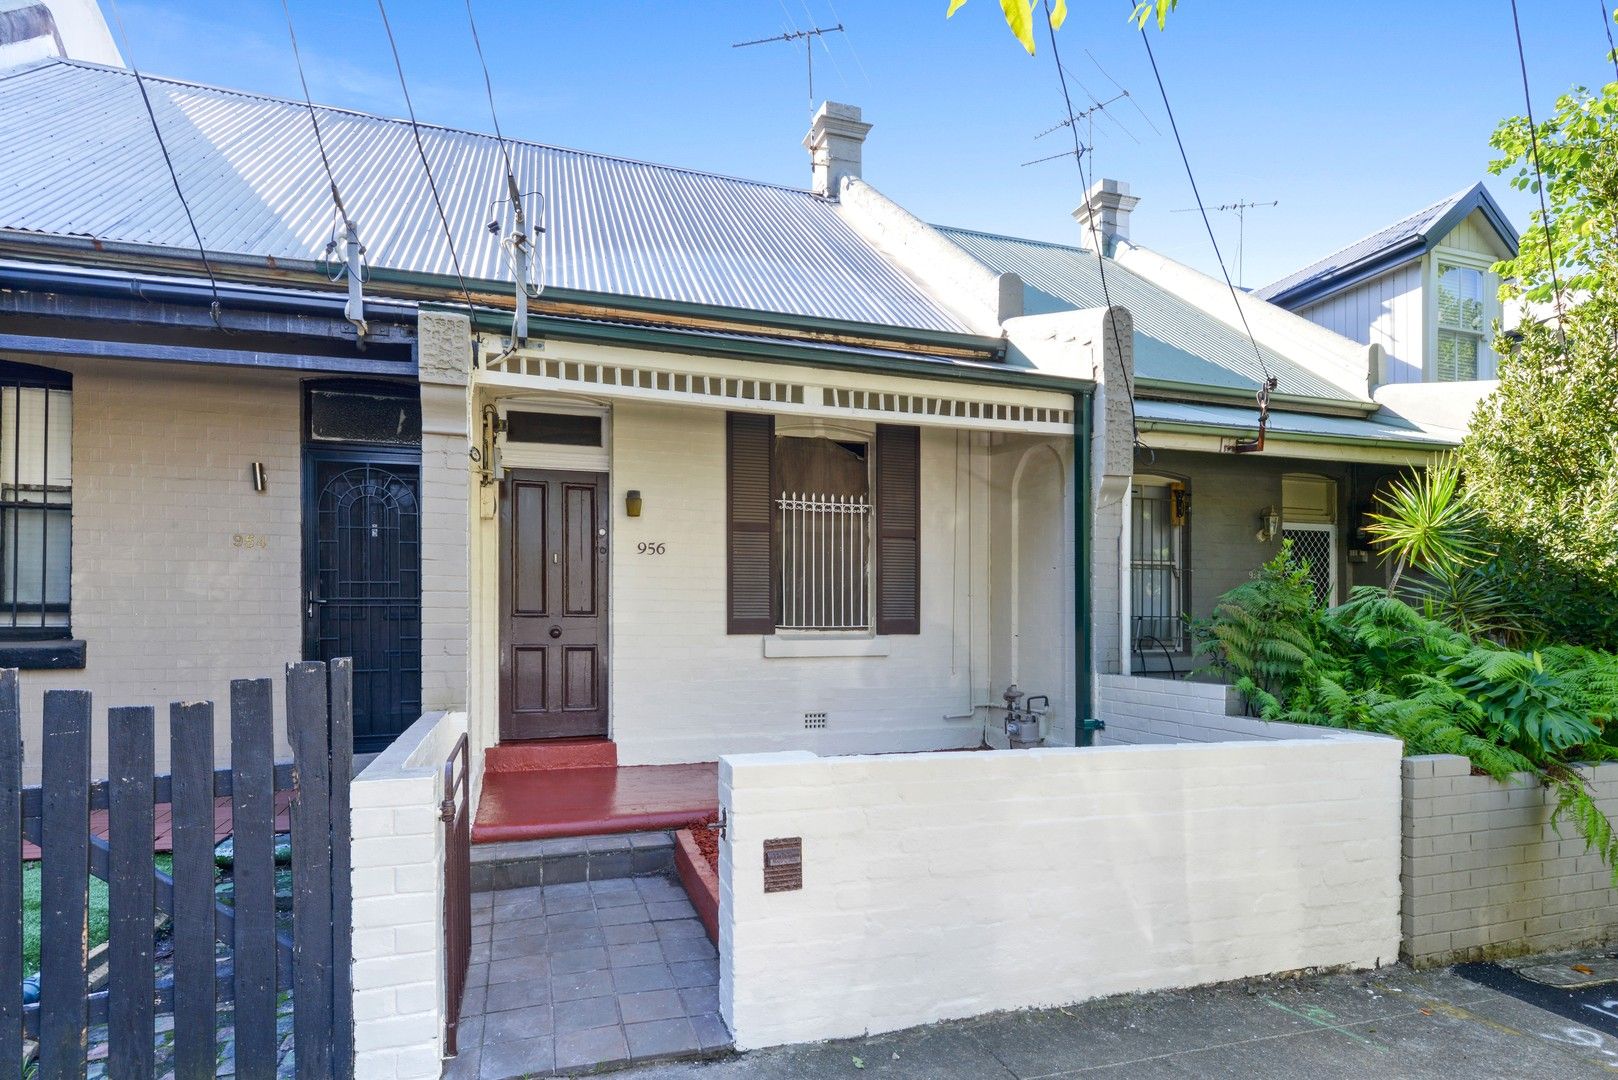 2 bedrooms Terrace in 956 Elizabeth Street ZETLAND NSW, 2017